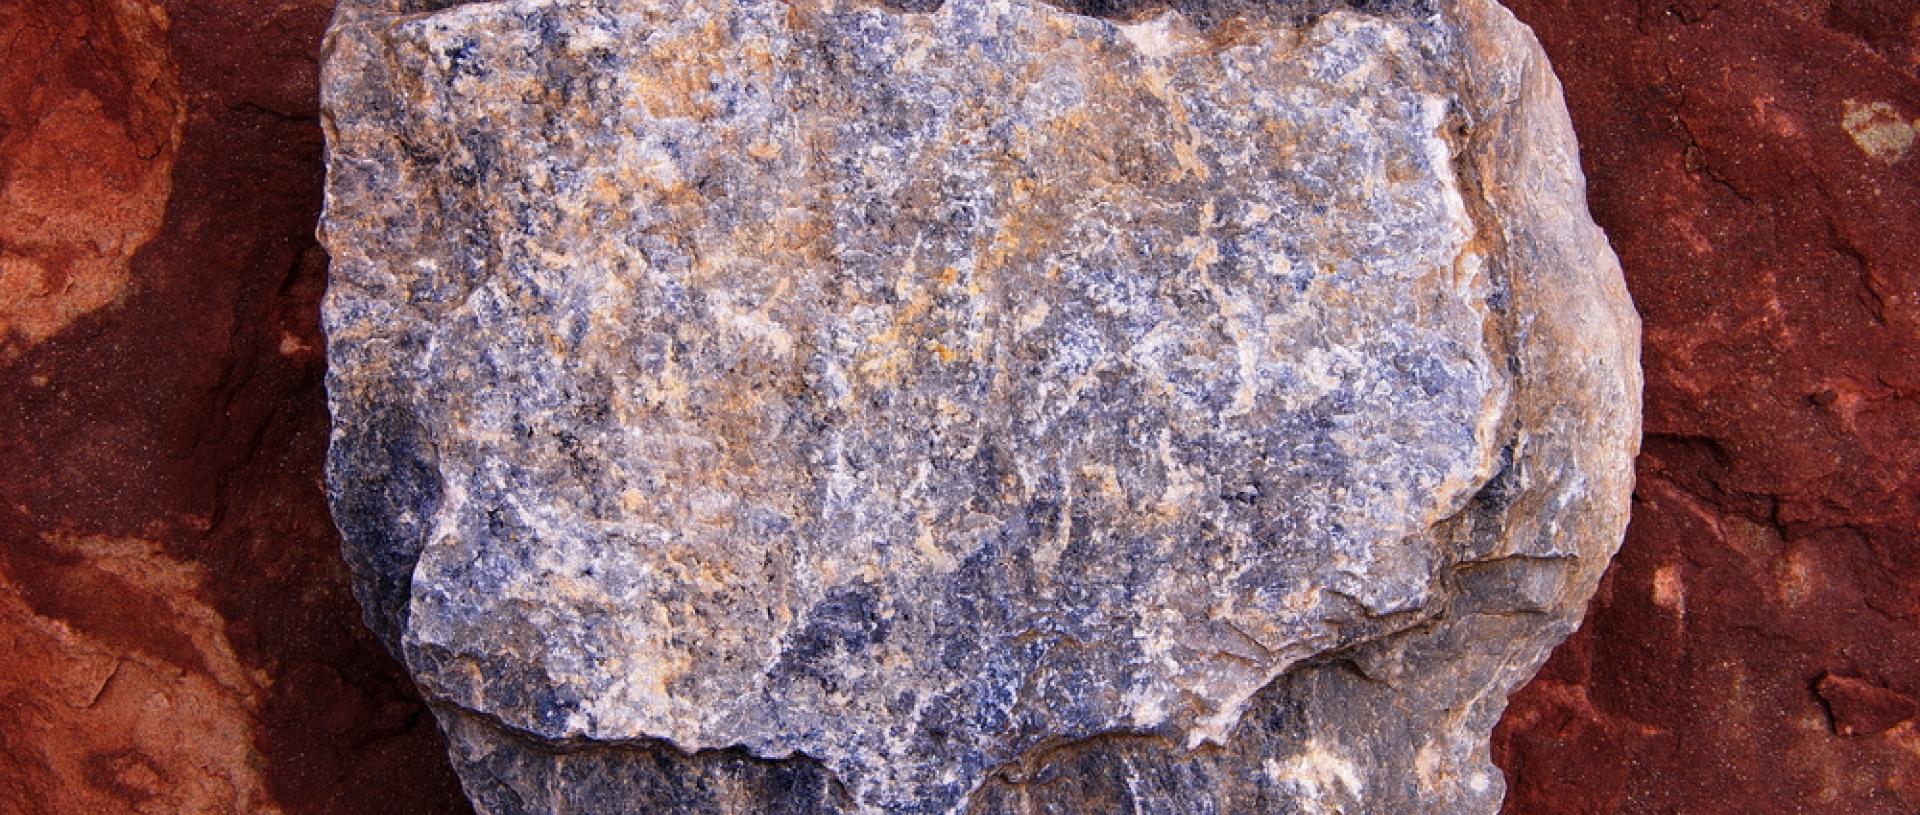 Ανακαλύφθηκε το αρχαιότερο ηφαιστειακό πέτρωμα σε μετεωρίτη ηλικίας 4,6 δισ. ετών